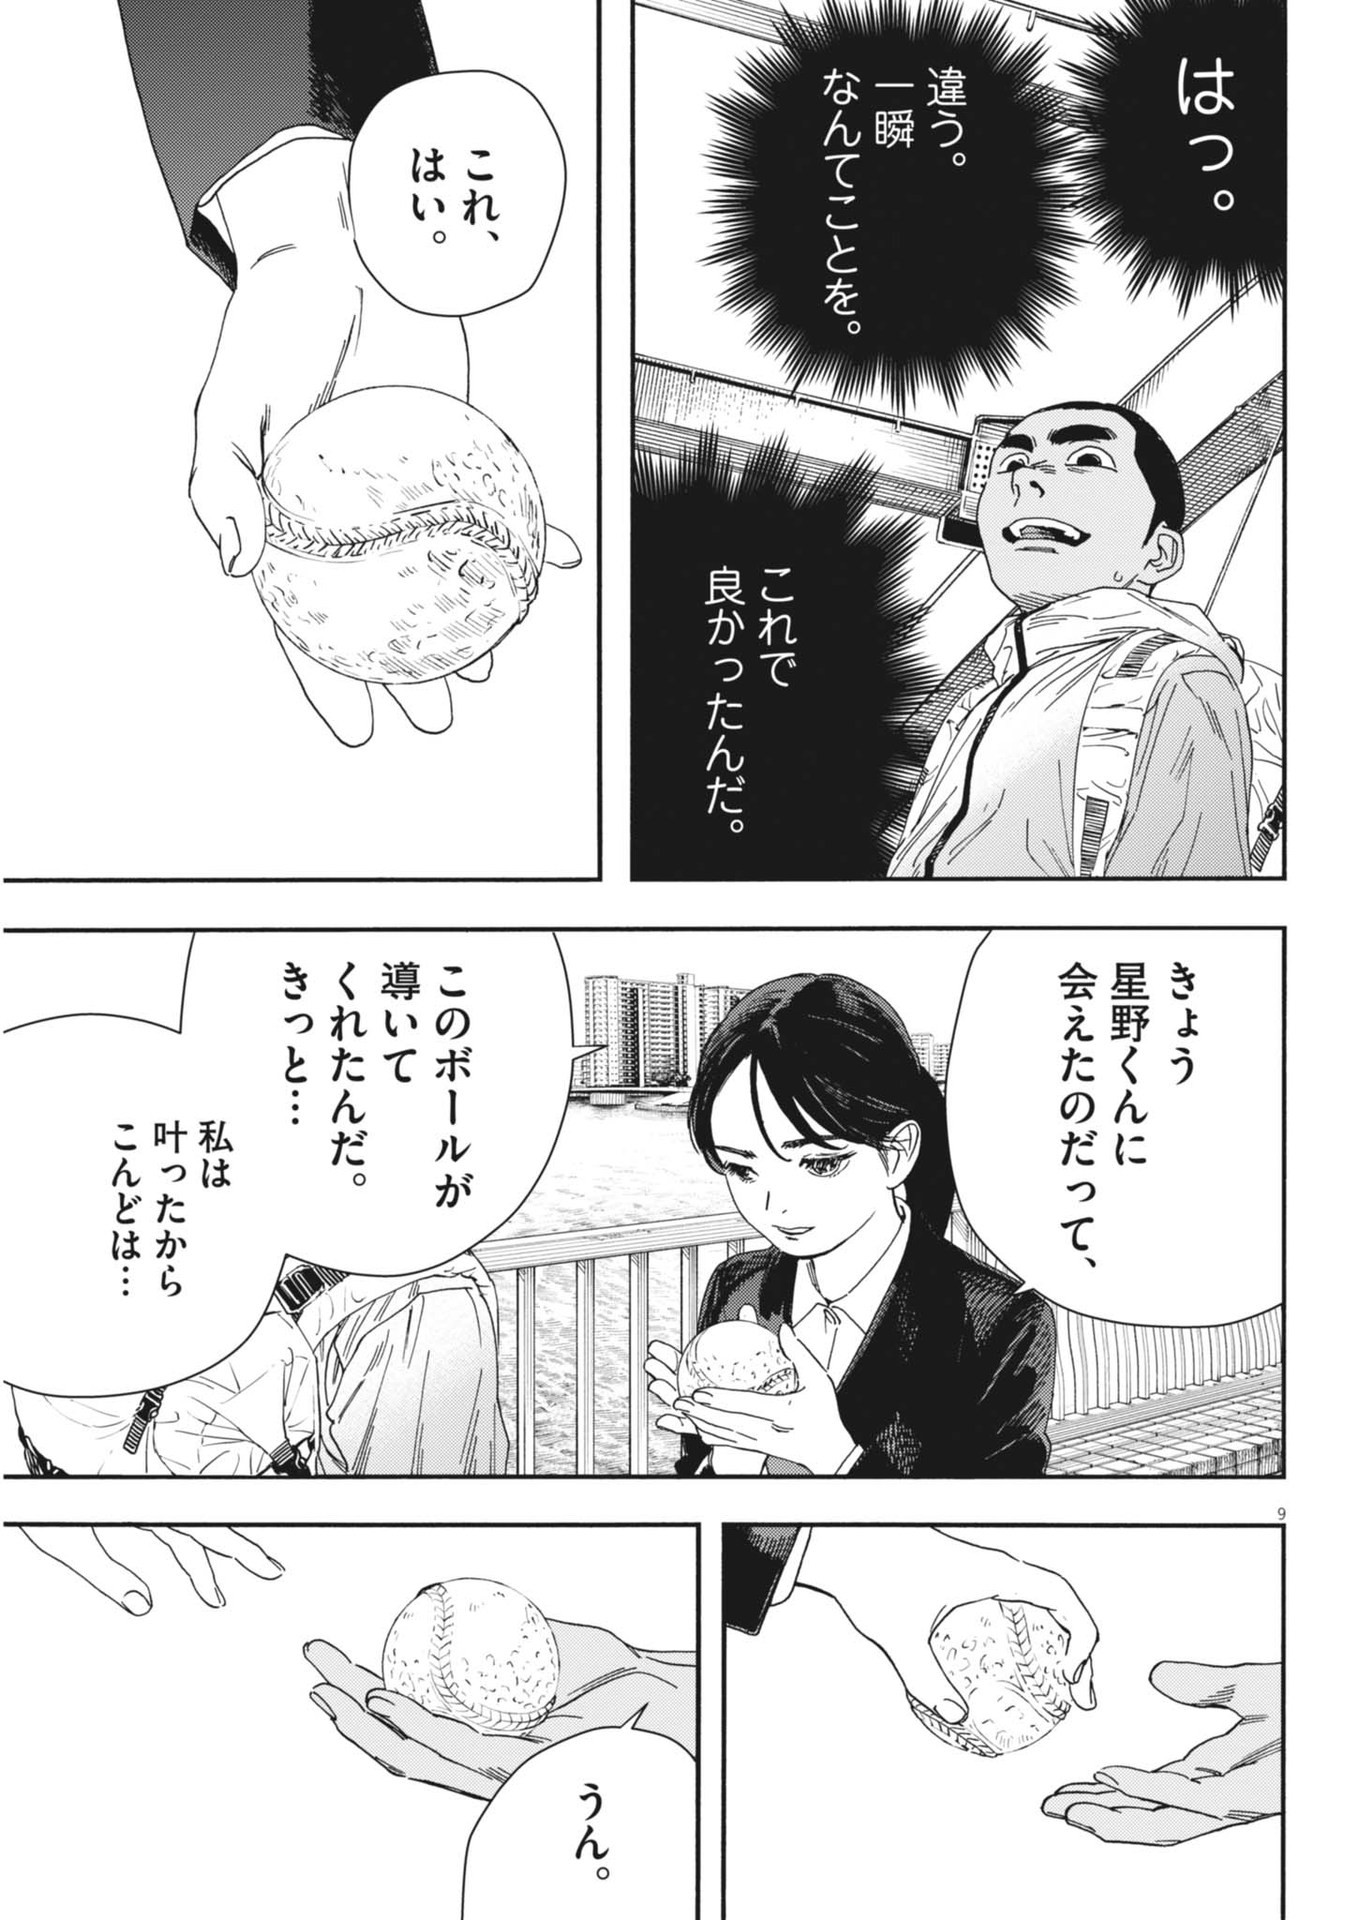 Hoshino-kun, Shitagatte! - Chapter 13 - Page 9